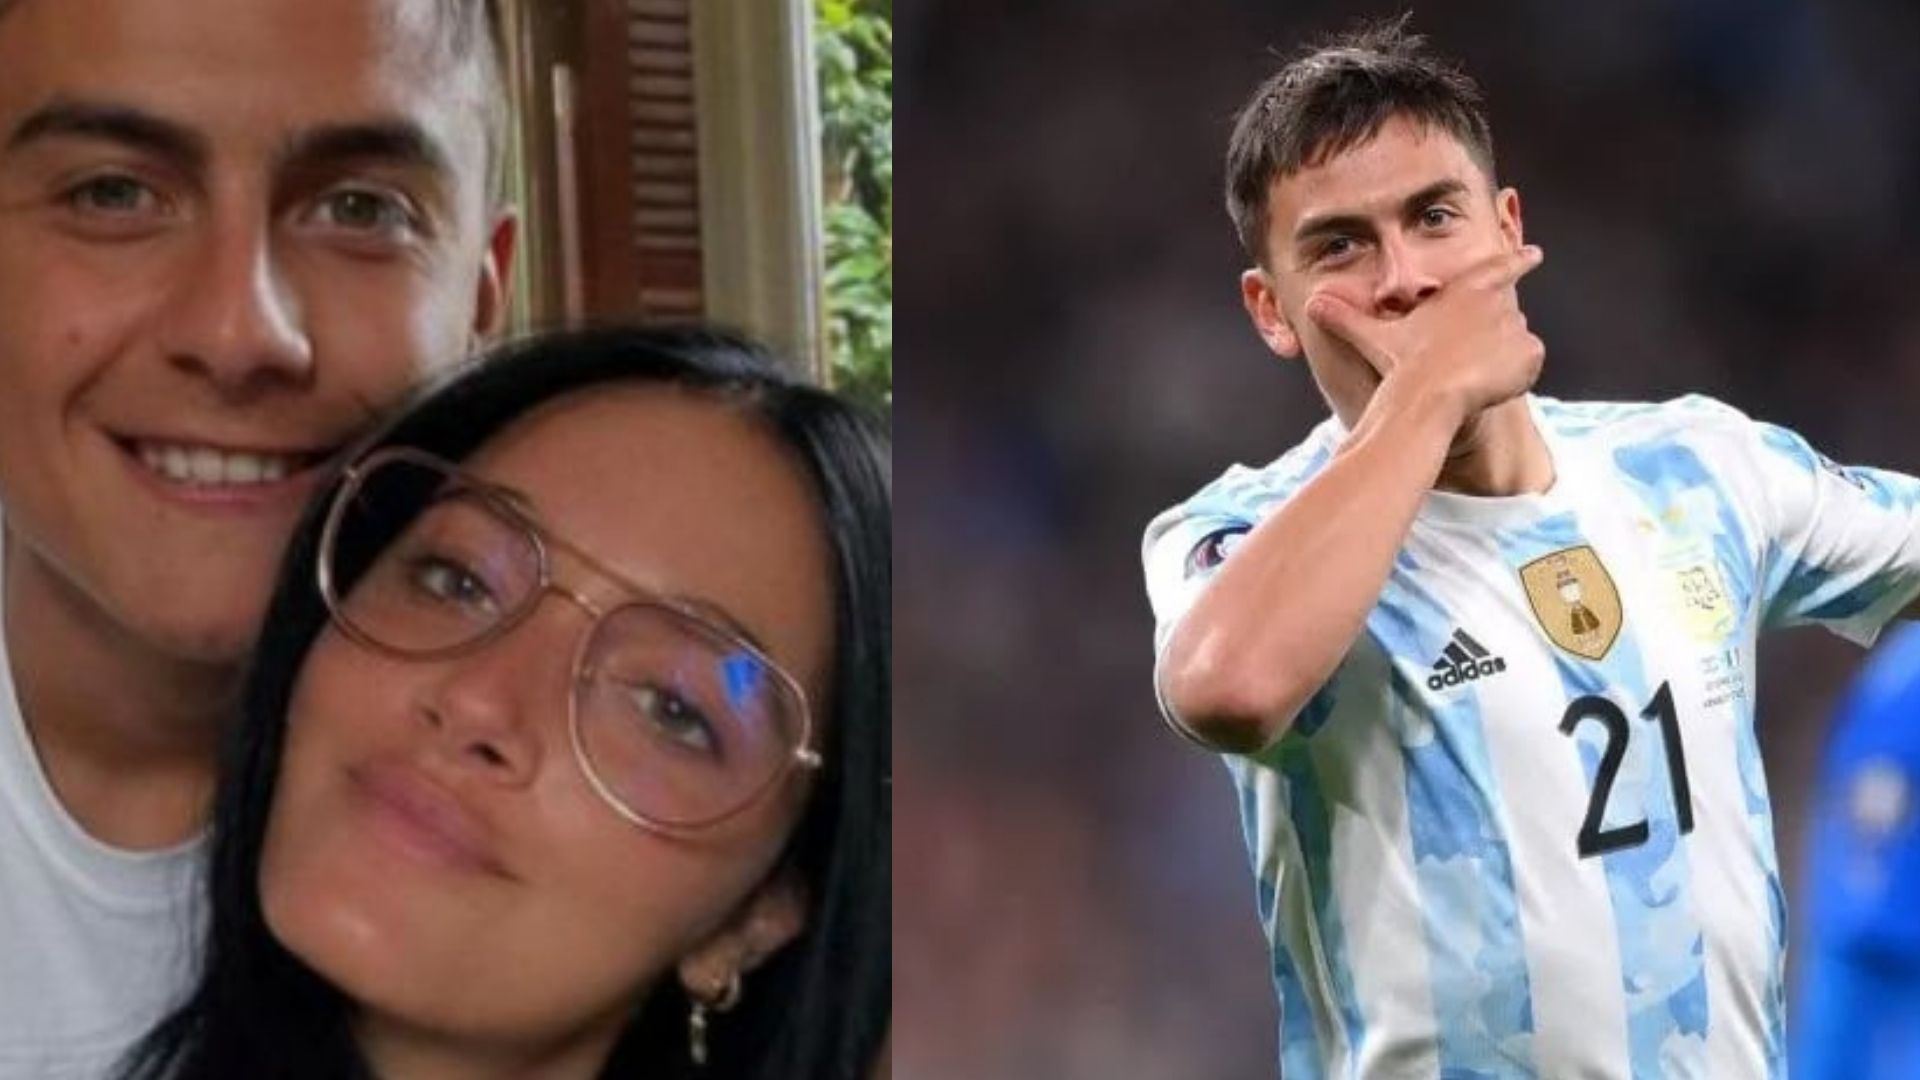 La romántica reacción de Oriana Sabatini al gol de Paulo Dybala en la Finalissima: “Rompiéndola como siempre”